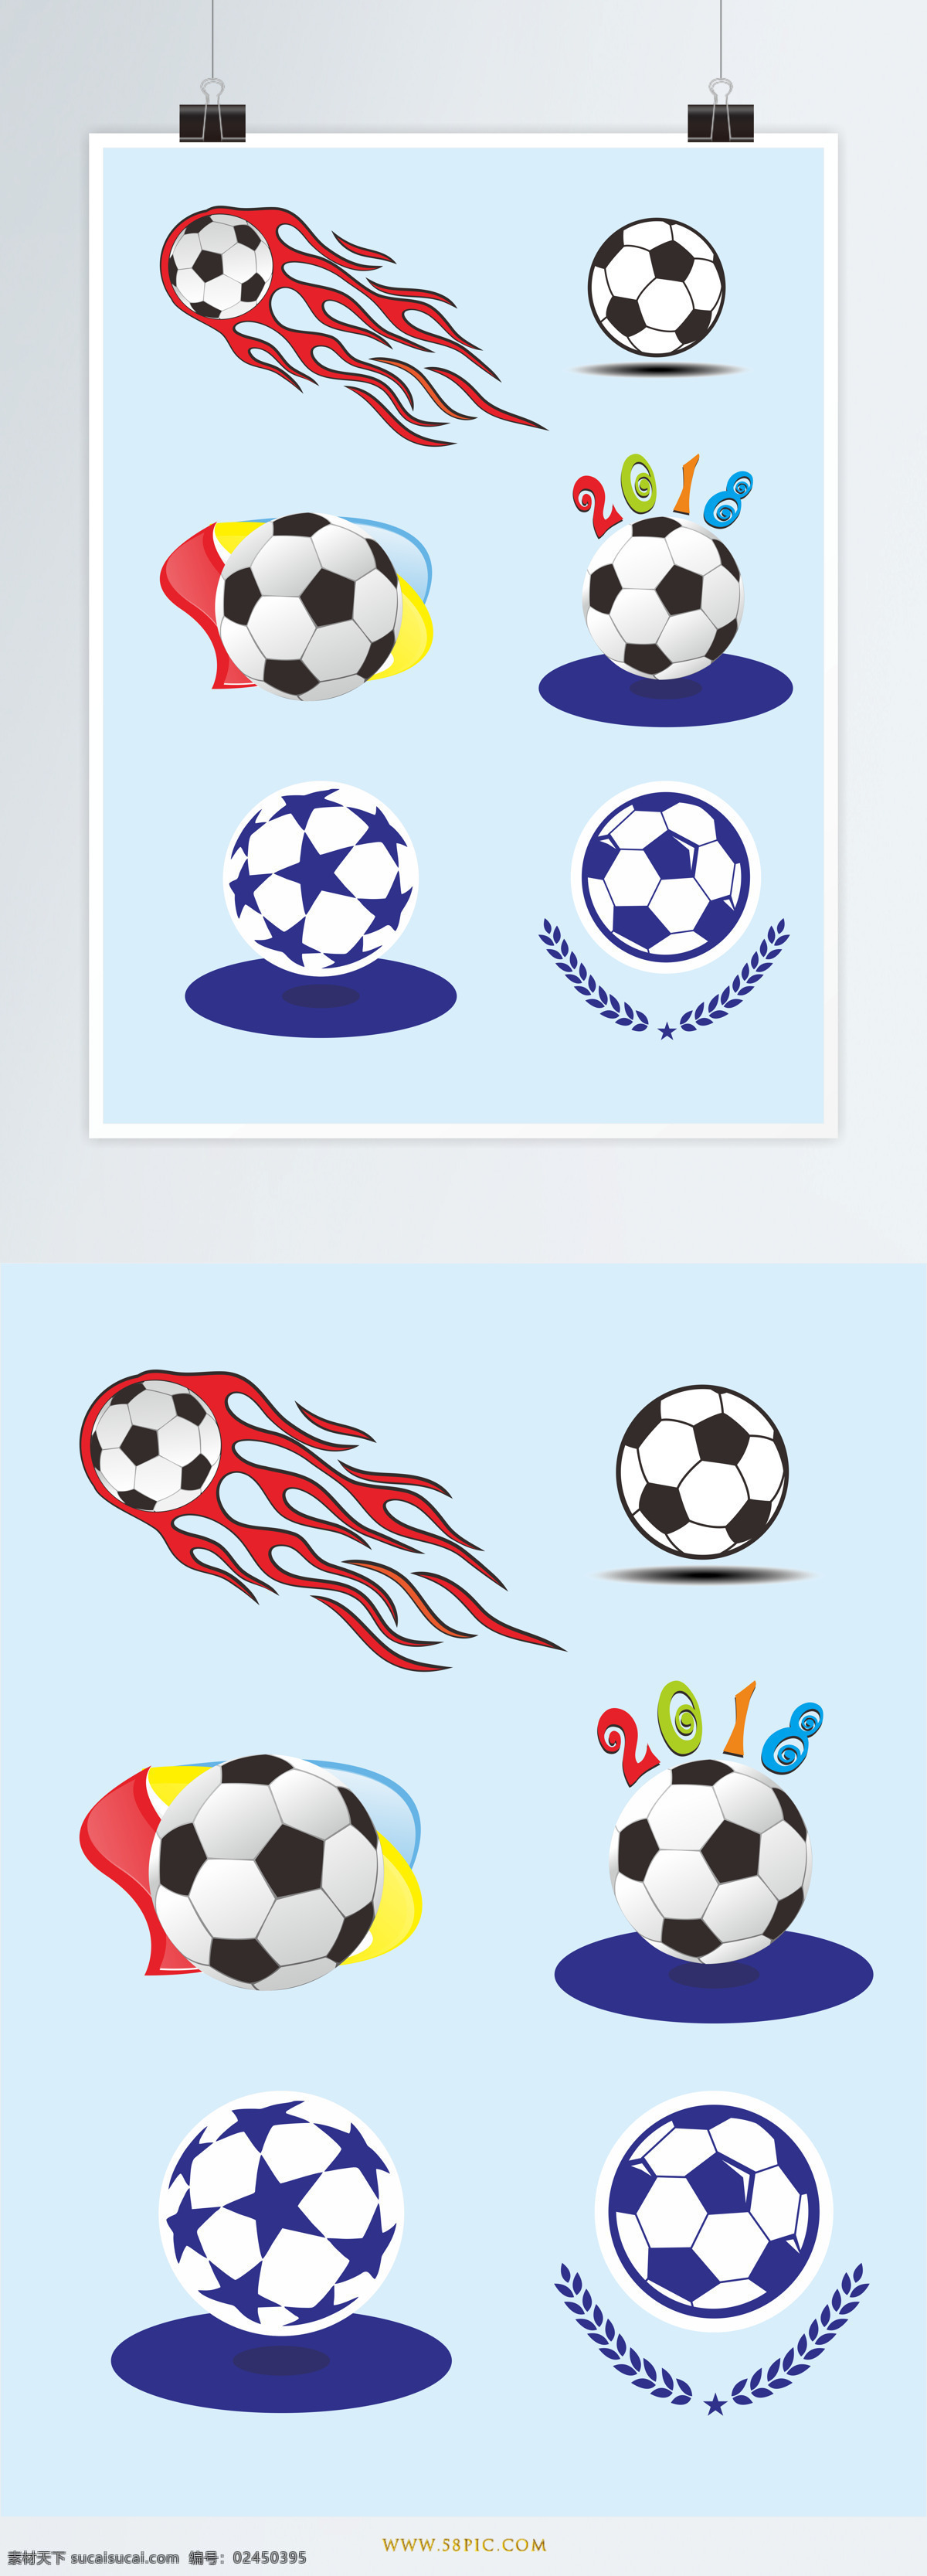 2018 俄罗斯 世界杯 足球 元素 足球元素 球类元素 足球素材 效果元素